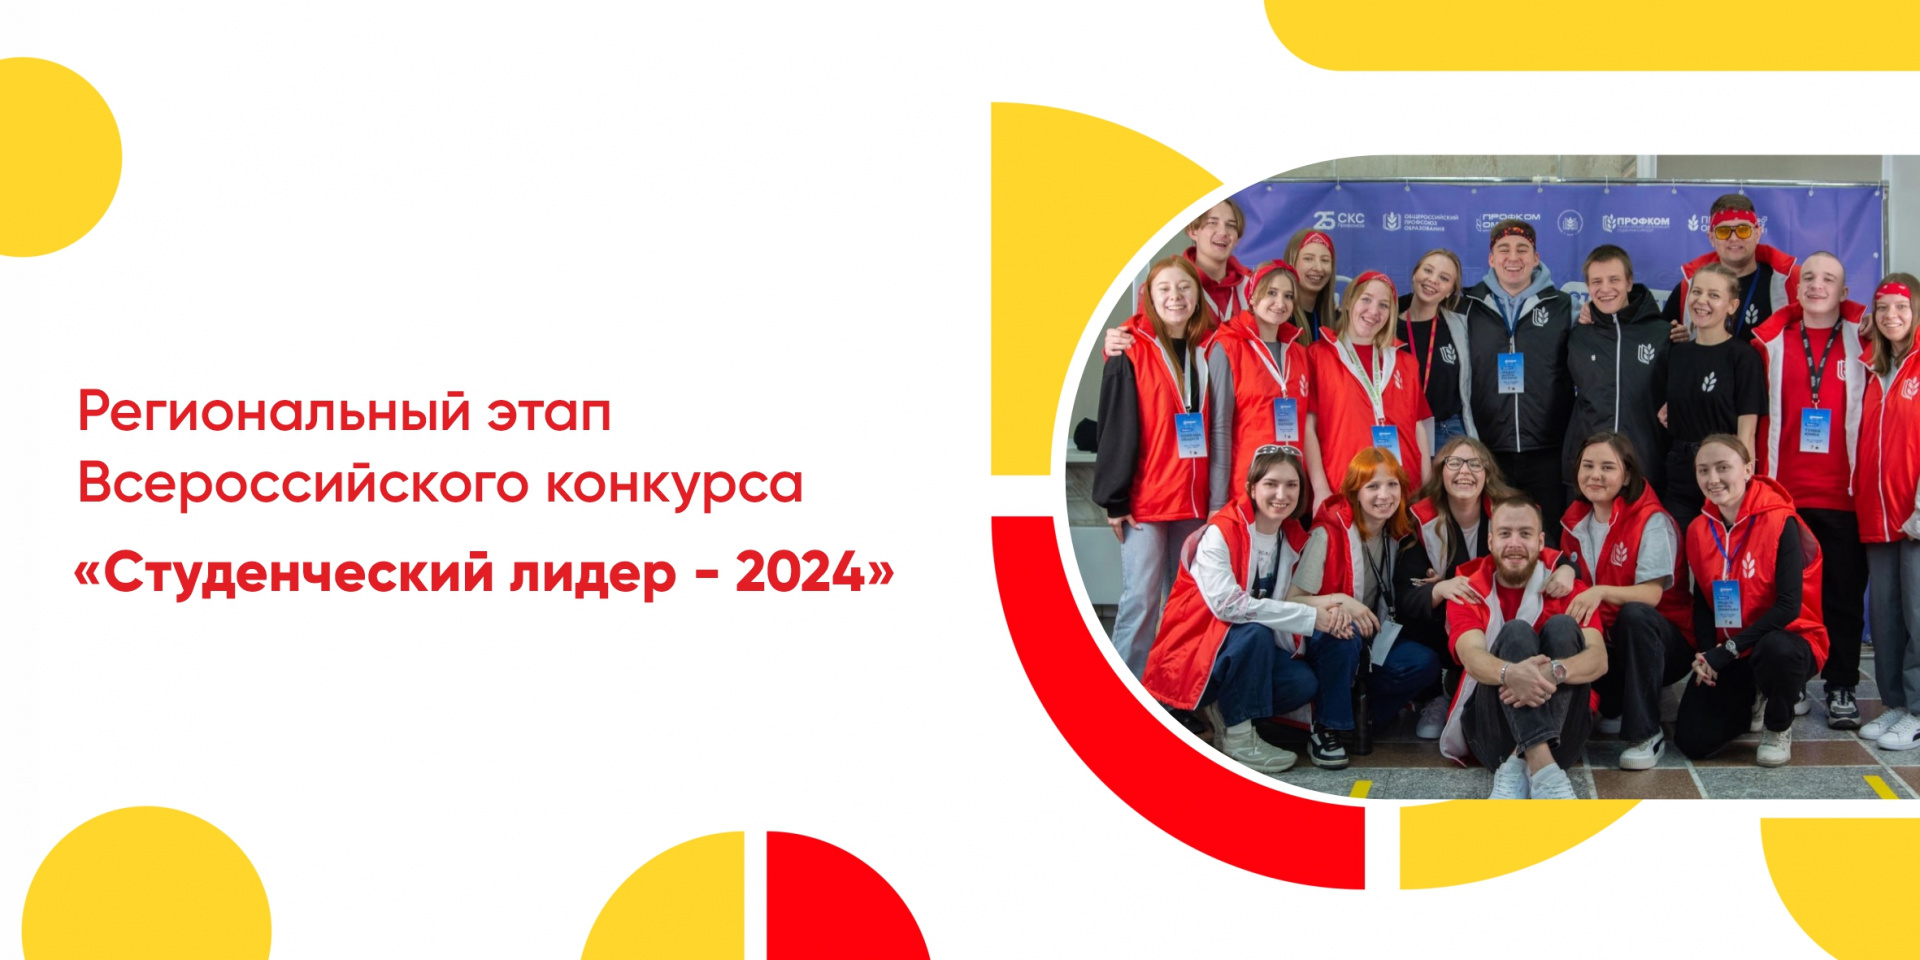 Региональный этап Всероссийского конкурса «Студенческий лидер - 2024»